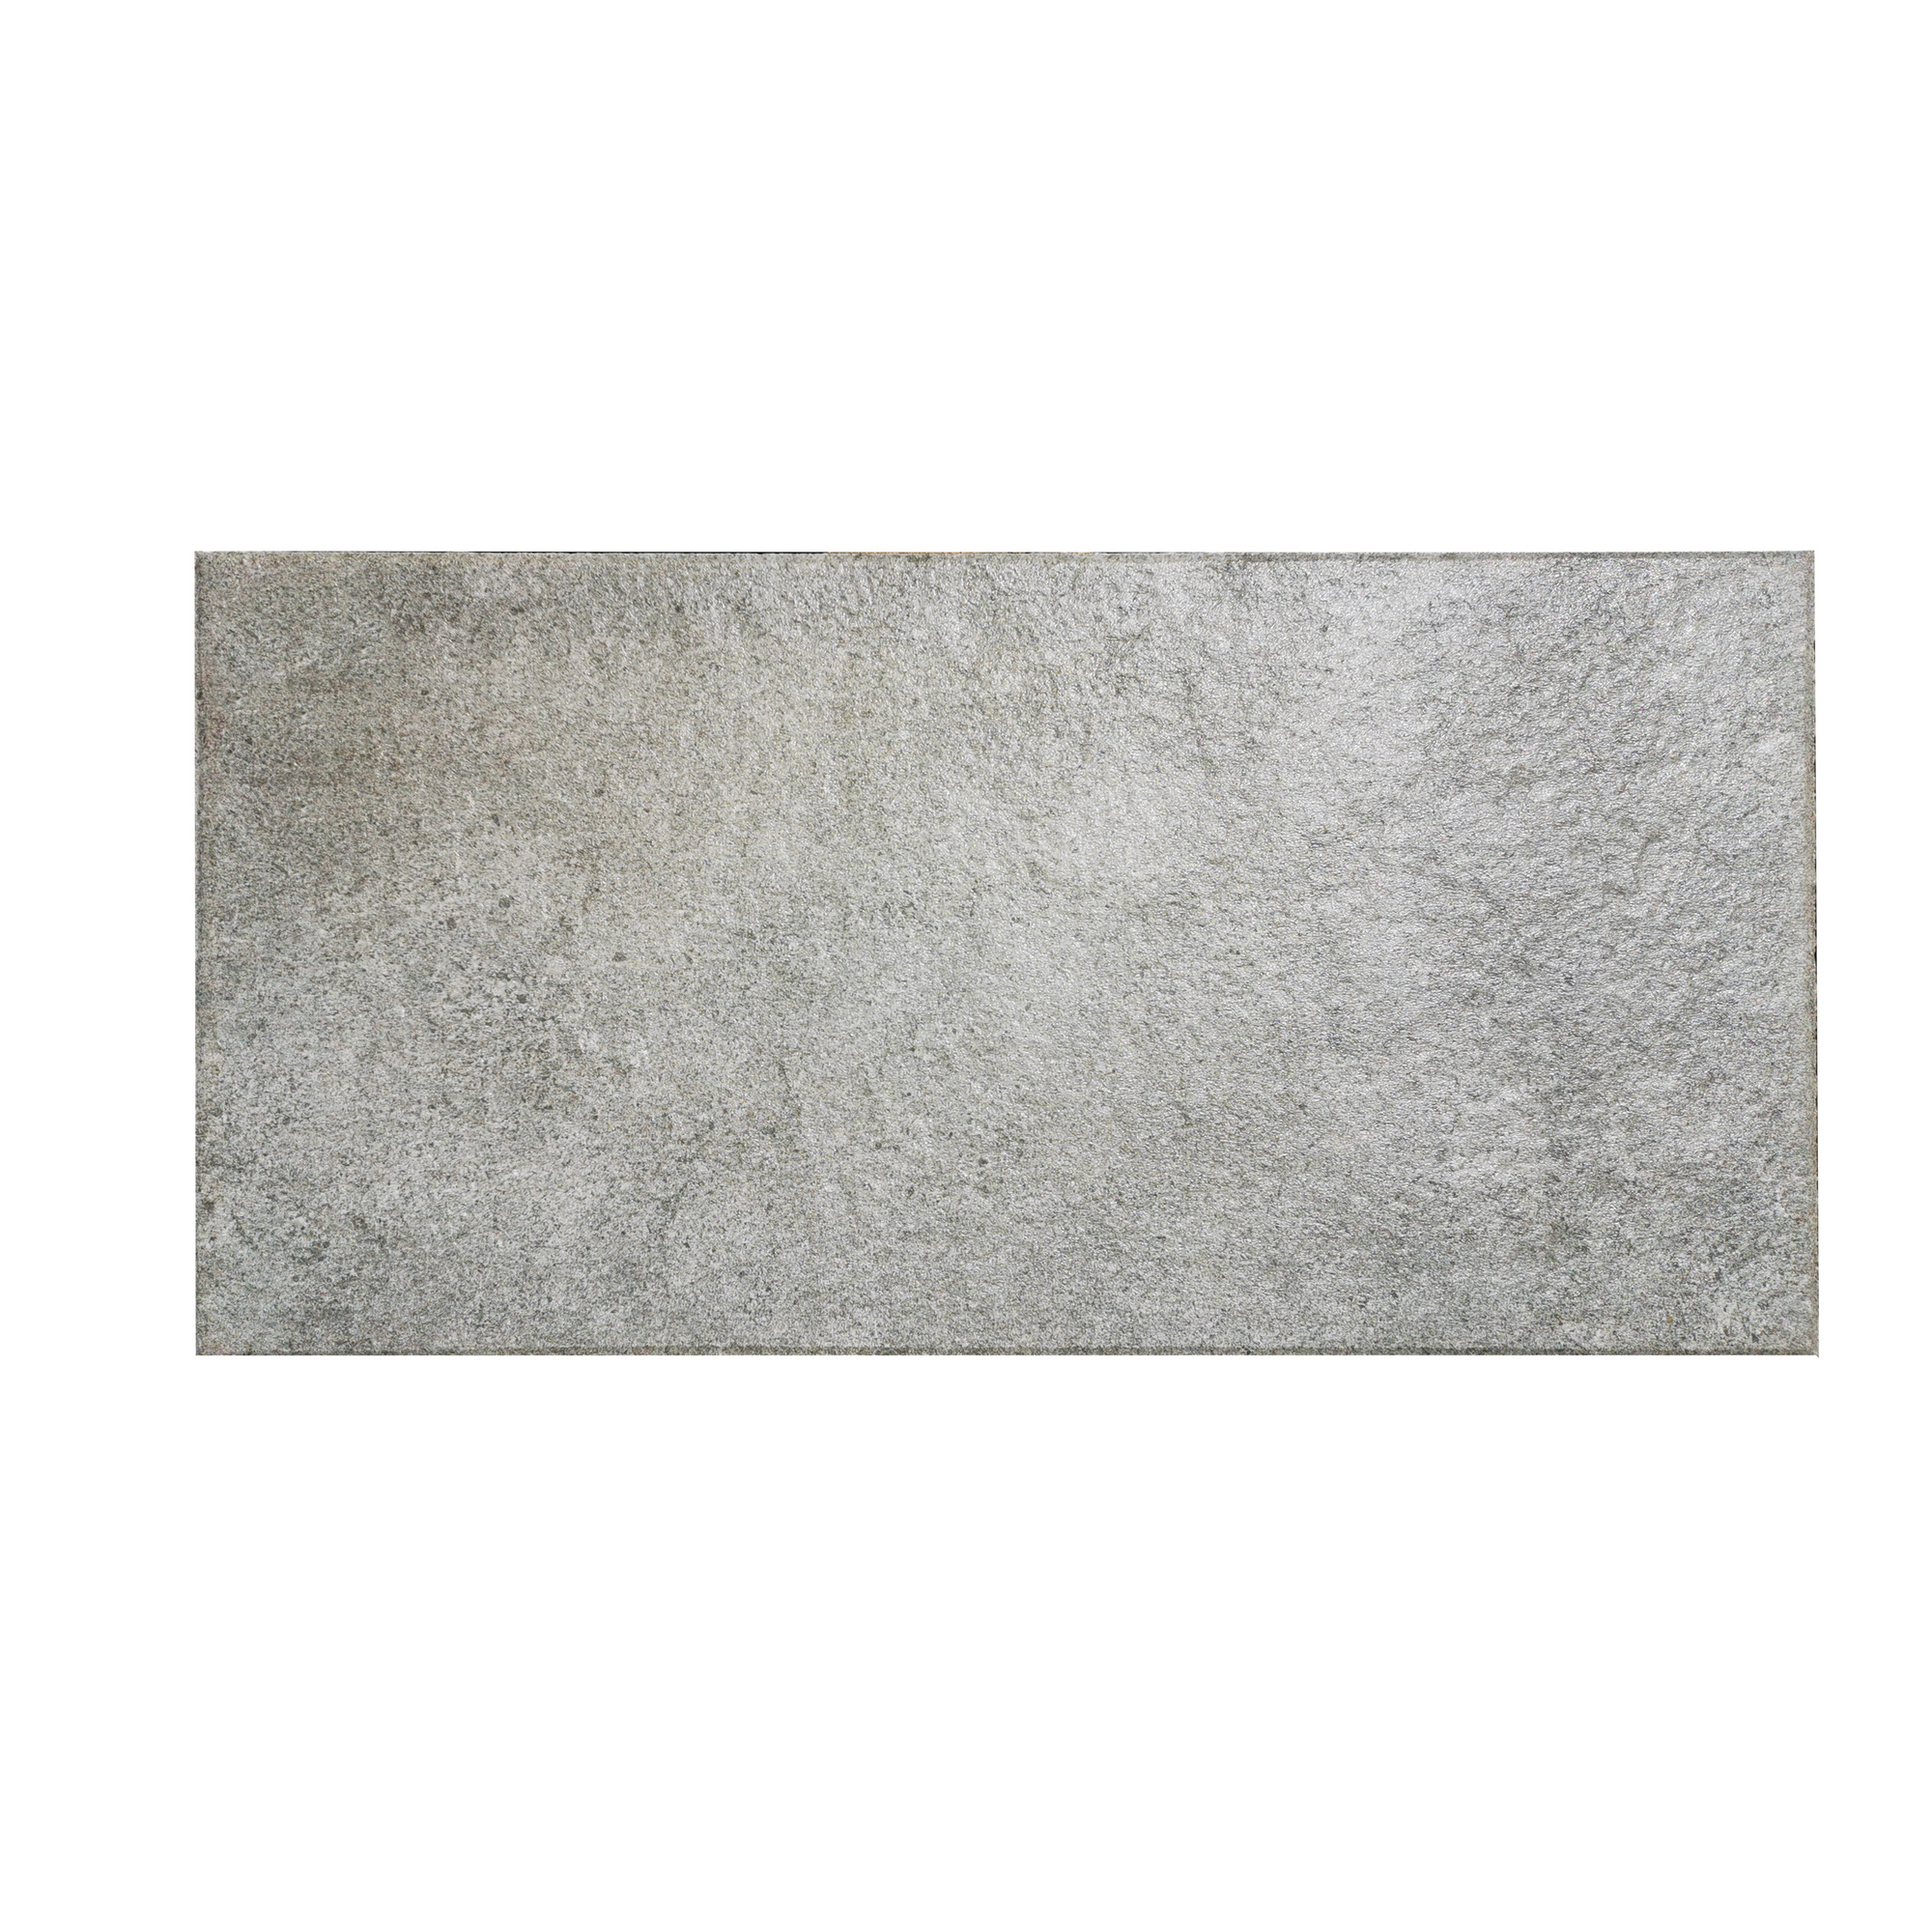 Terrassenplatte 'T-Court Fine' natural basalt 80 x 40 x 4 cm + product picture